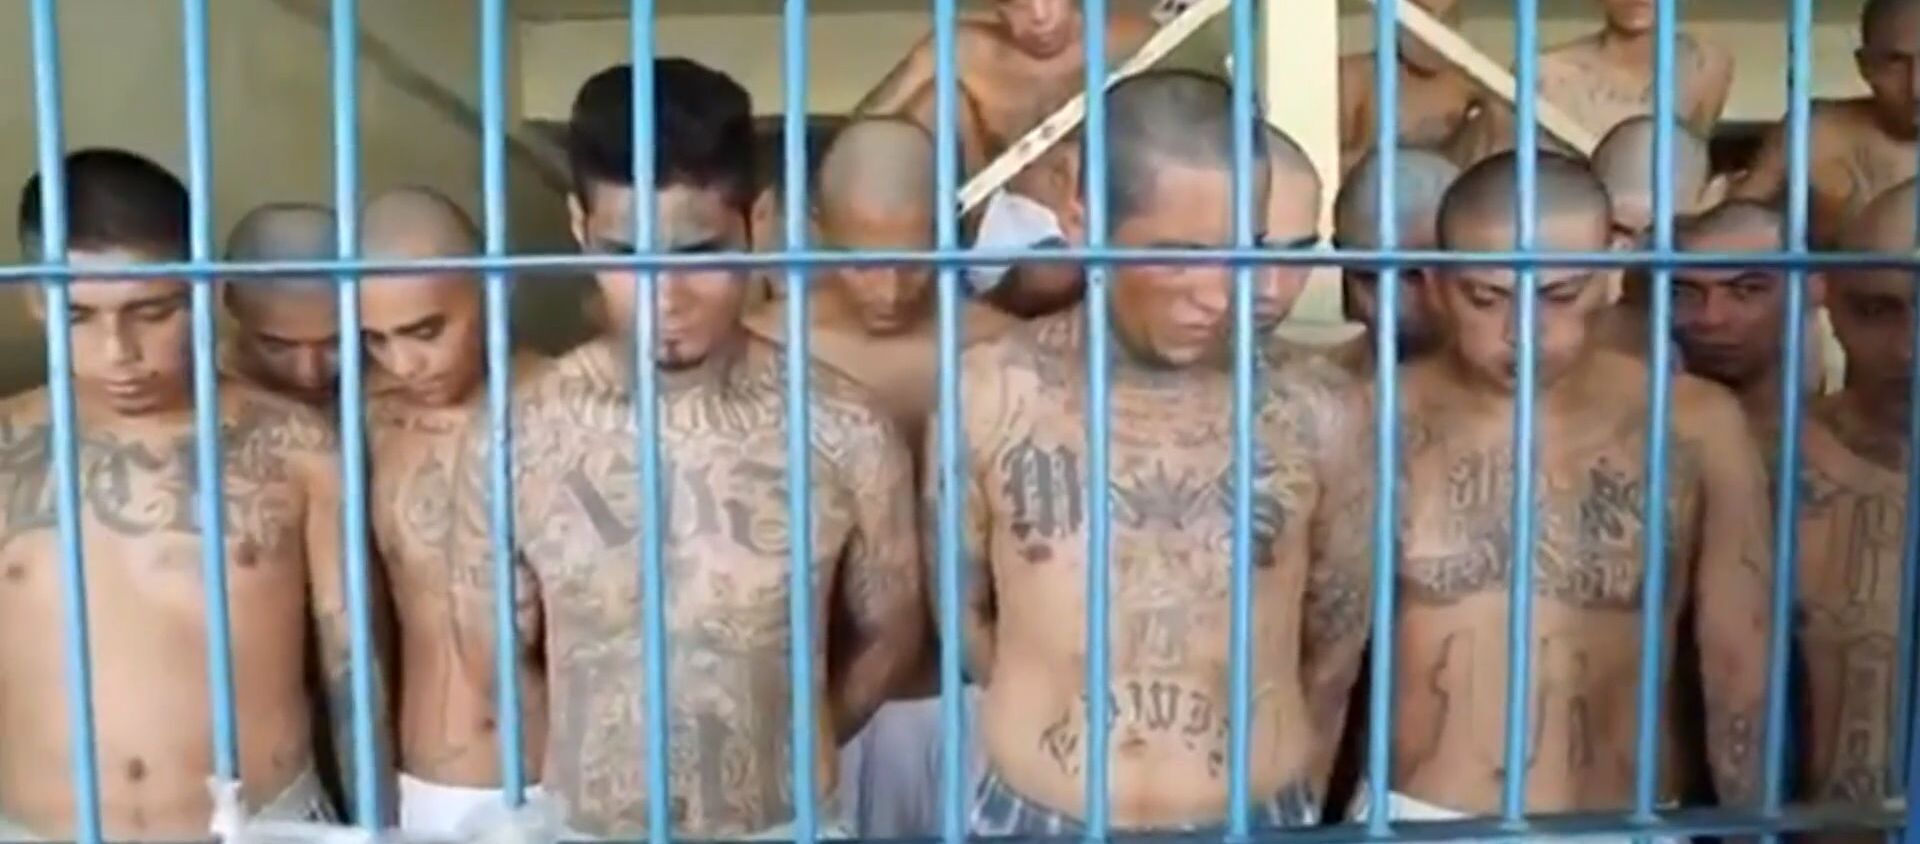 Hacinados en las celdas: las impactantes imágenes desde dentro de una prisión en El Salvador - Sputnik Mundo, 1920, 29.04.2020